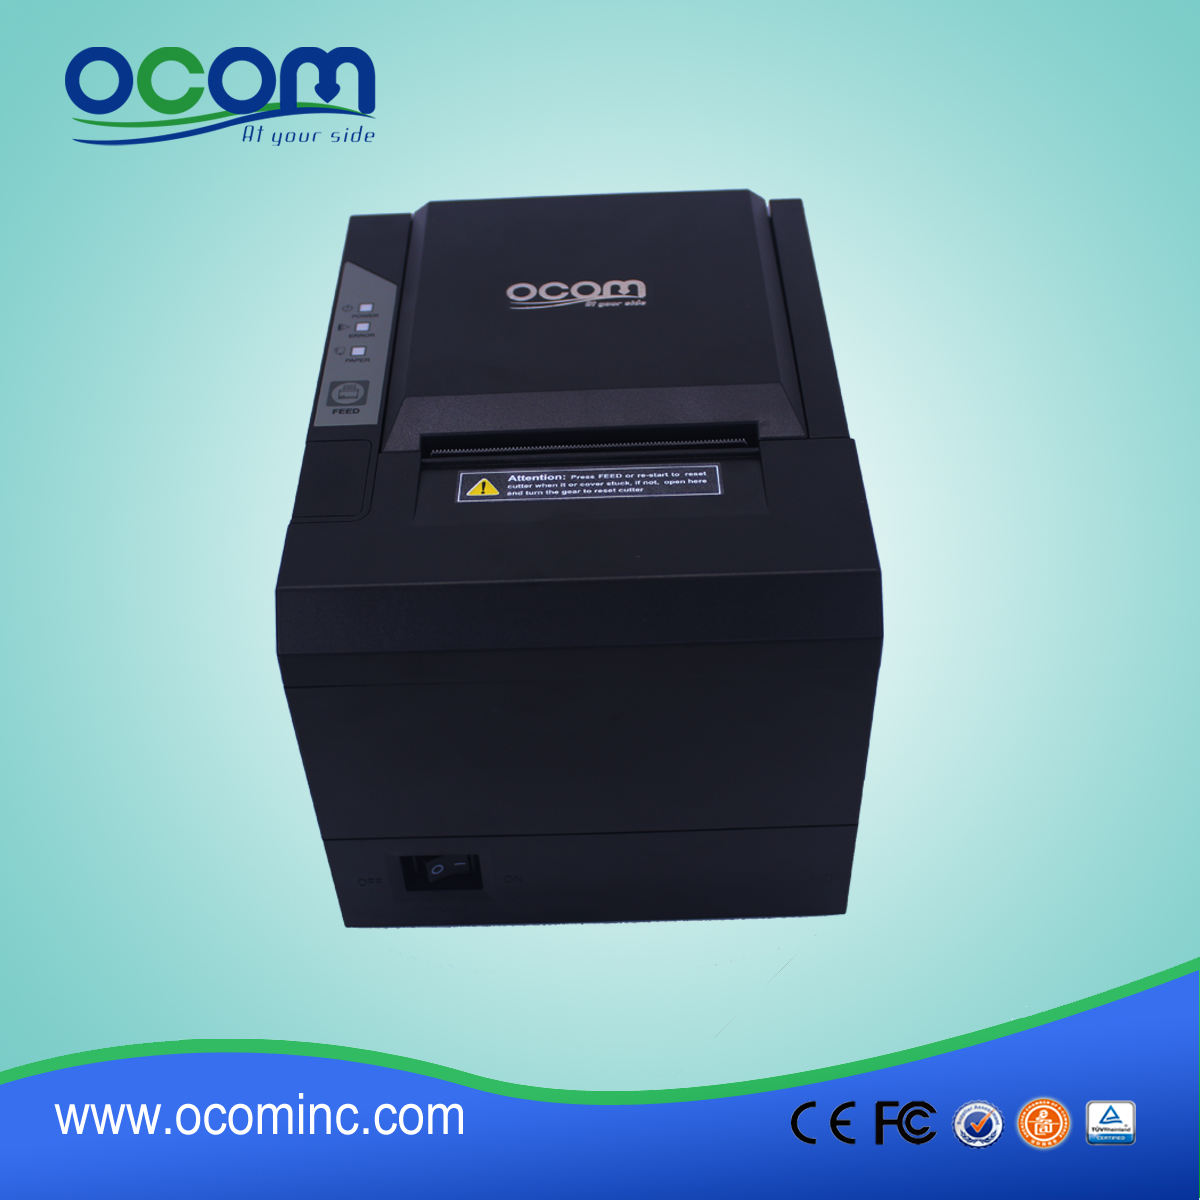 OCPP-80G-U Надежный 80-мм термоприемный принтер с интерфейсом USB